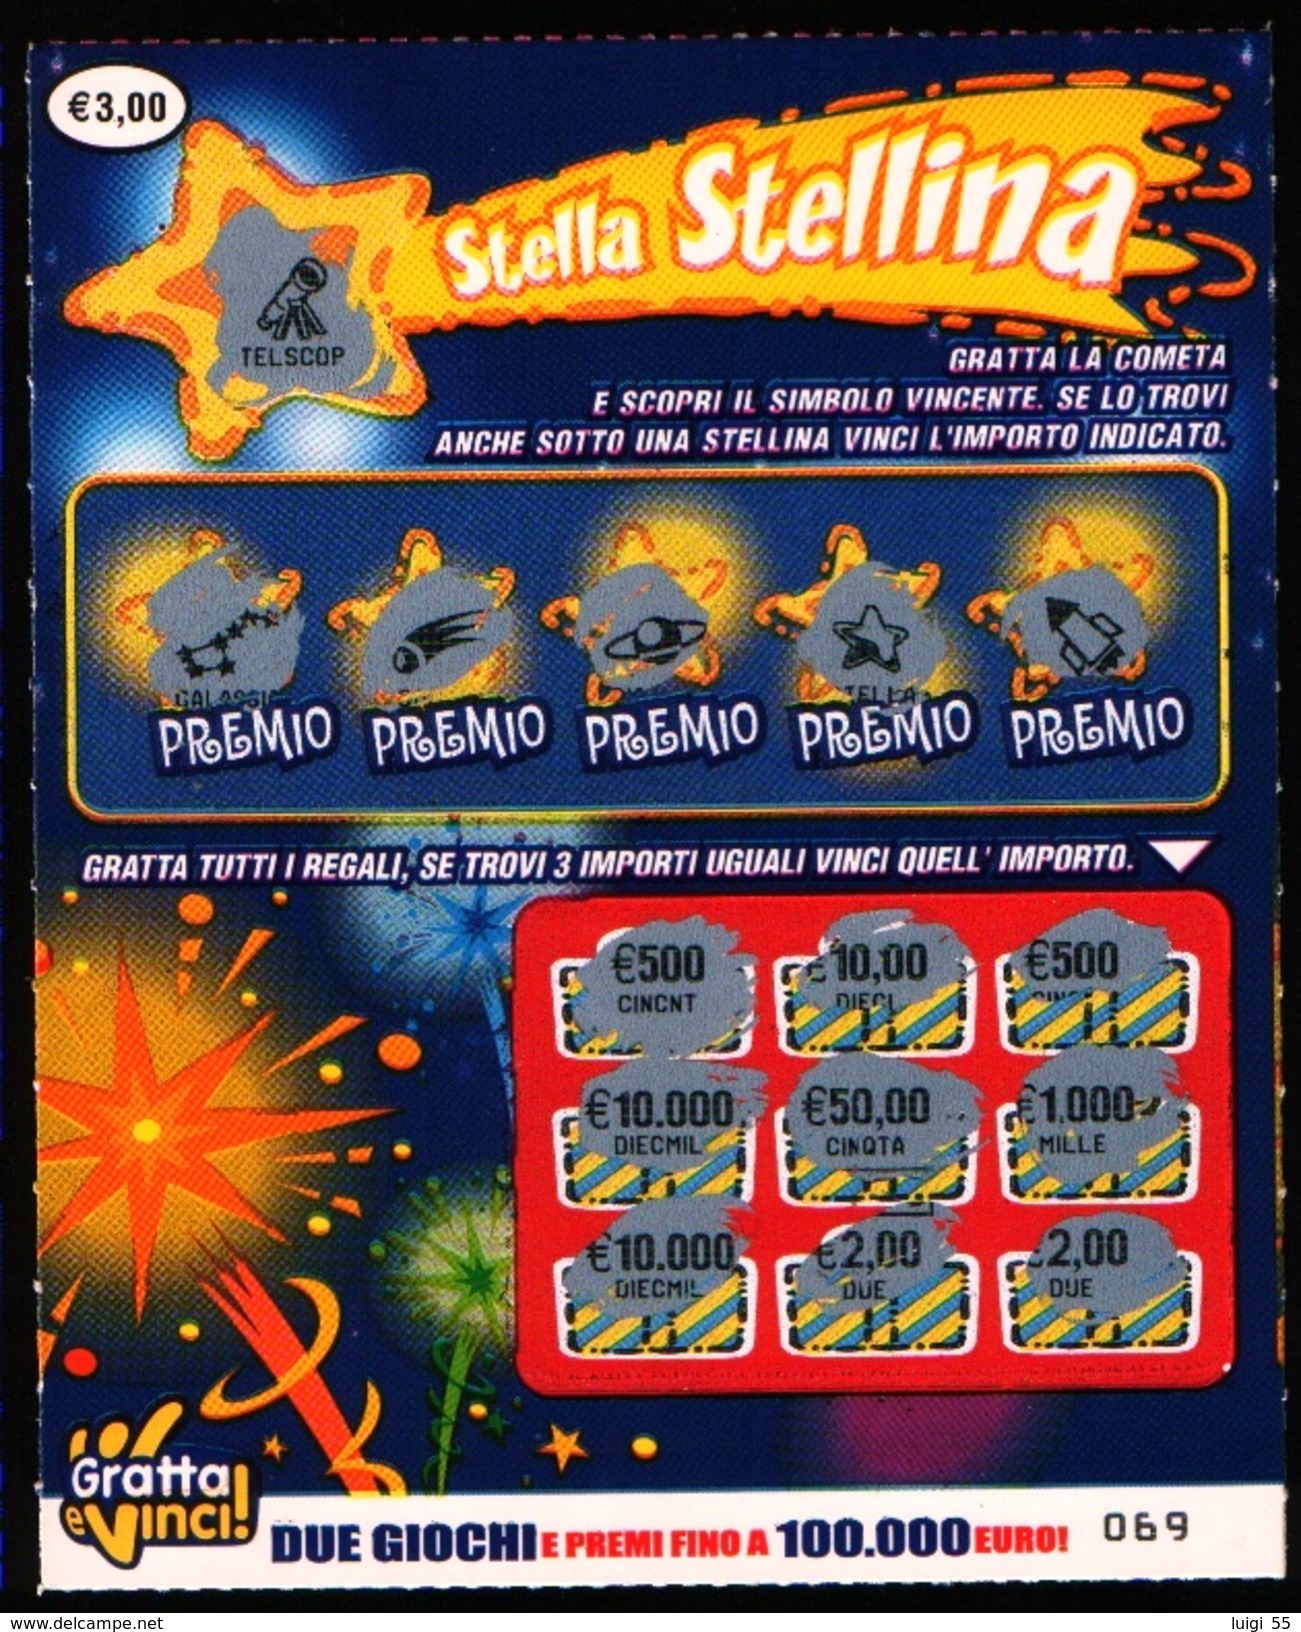 GRATTA E VINCI - 2004 - Stella Stellina - Usato - Biglietti Della Lotteria